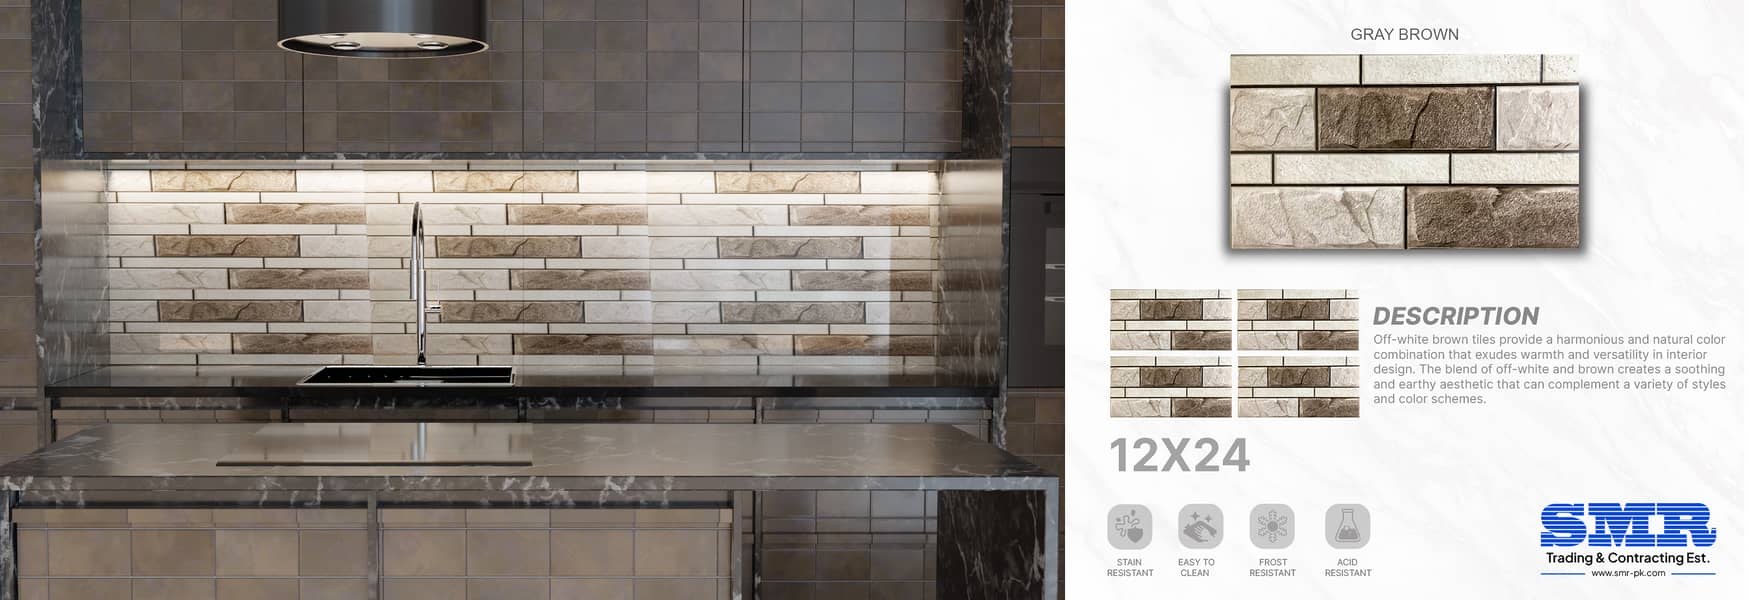 12x24 kitchen tiles 2